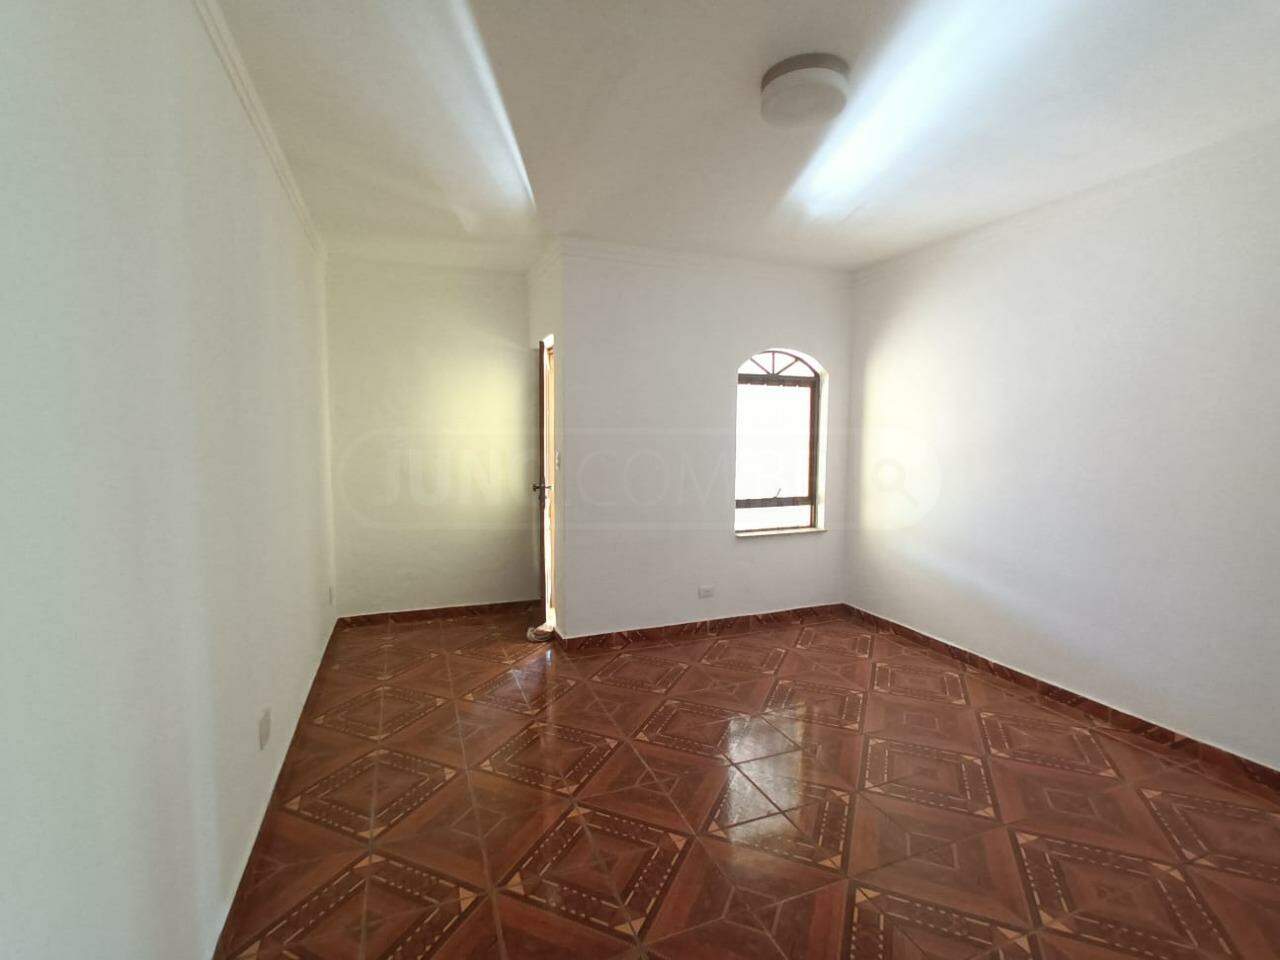 Casa à venda, 2 quartos, 2 vagas, no bairro Vila Bessy em Piracicaba - SP